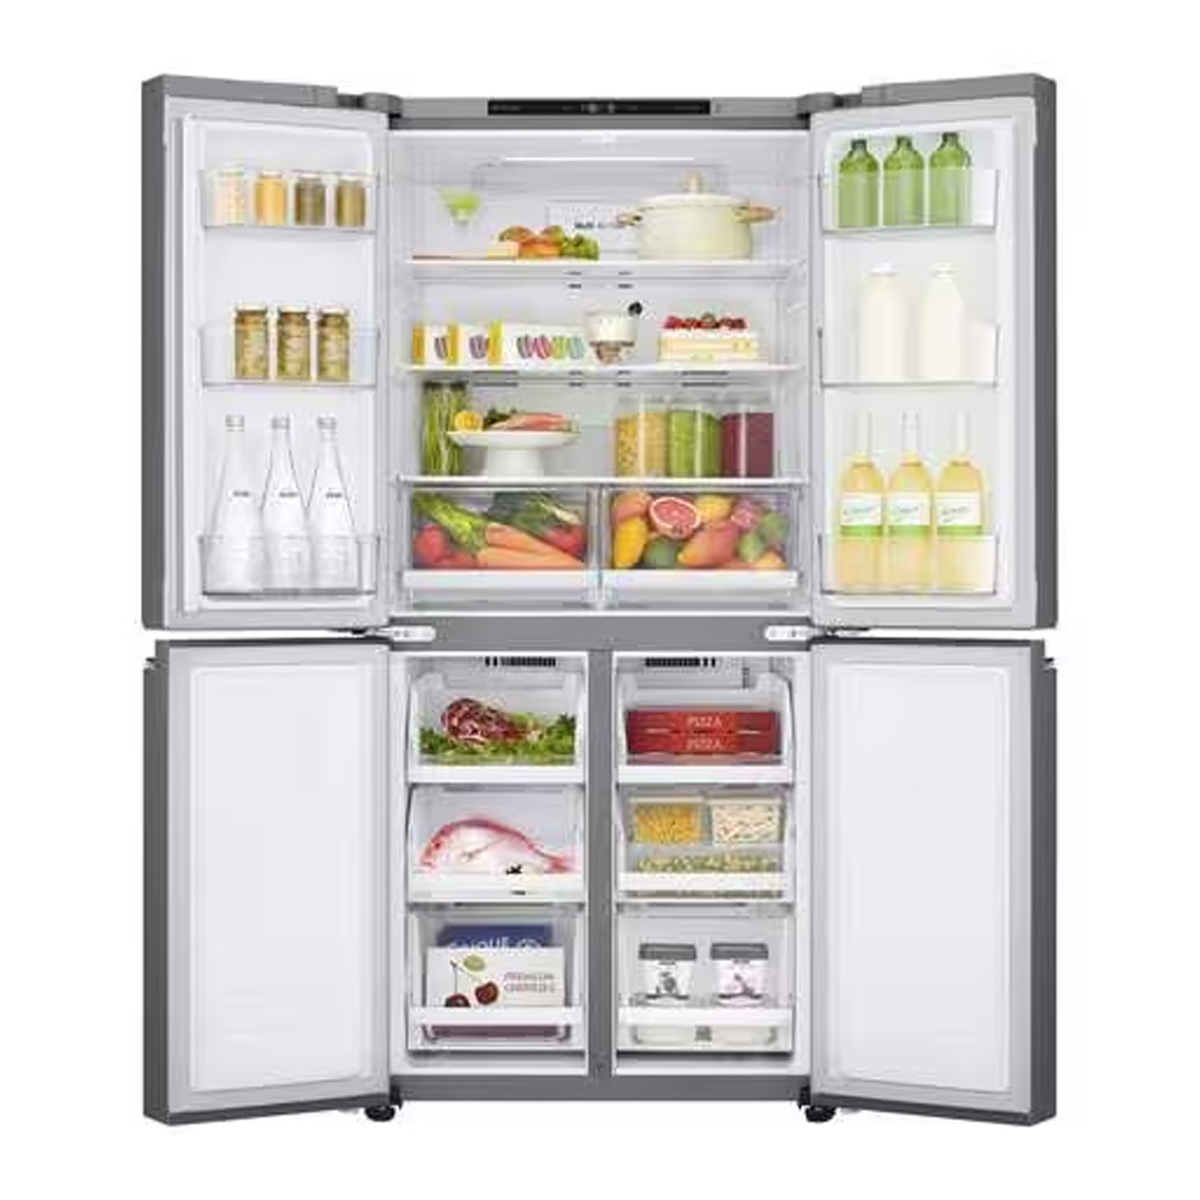 LG French Door Refrigerator, 464 L, Silver, GR-B29FTLVB